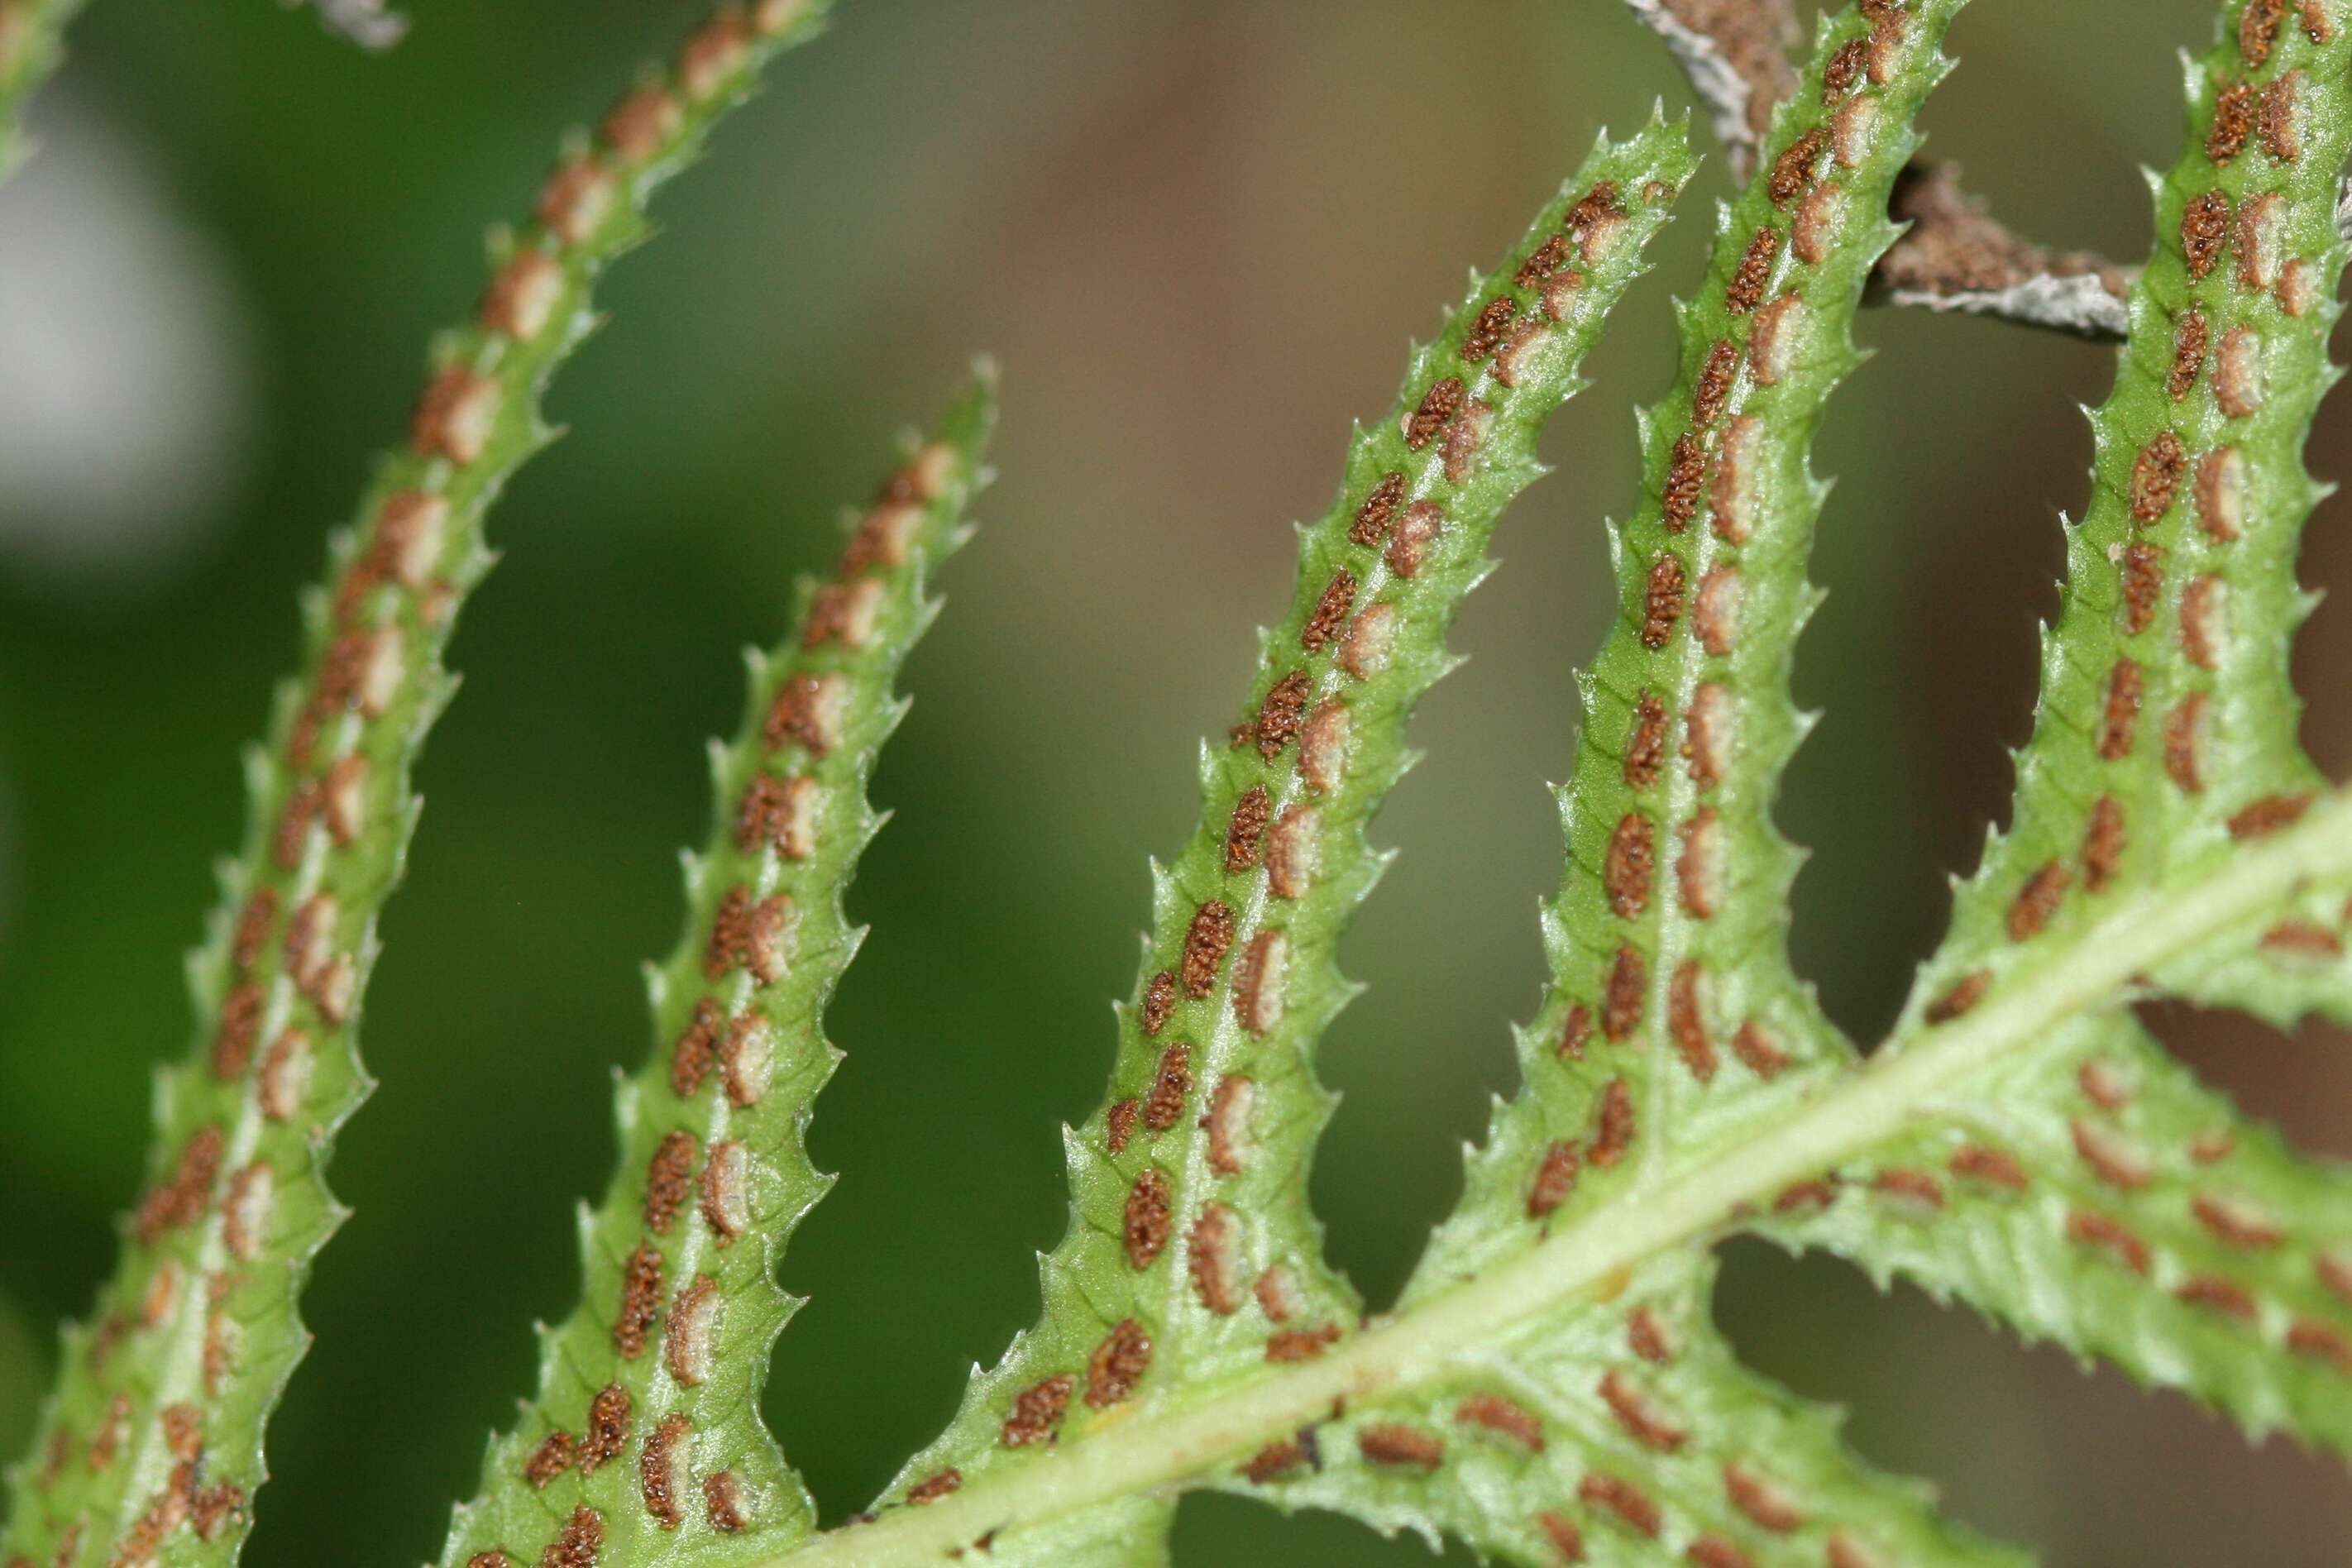 Image of hacksaw fern